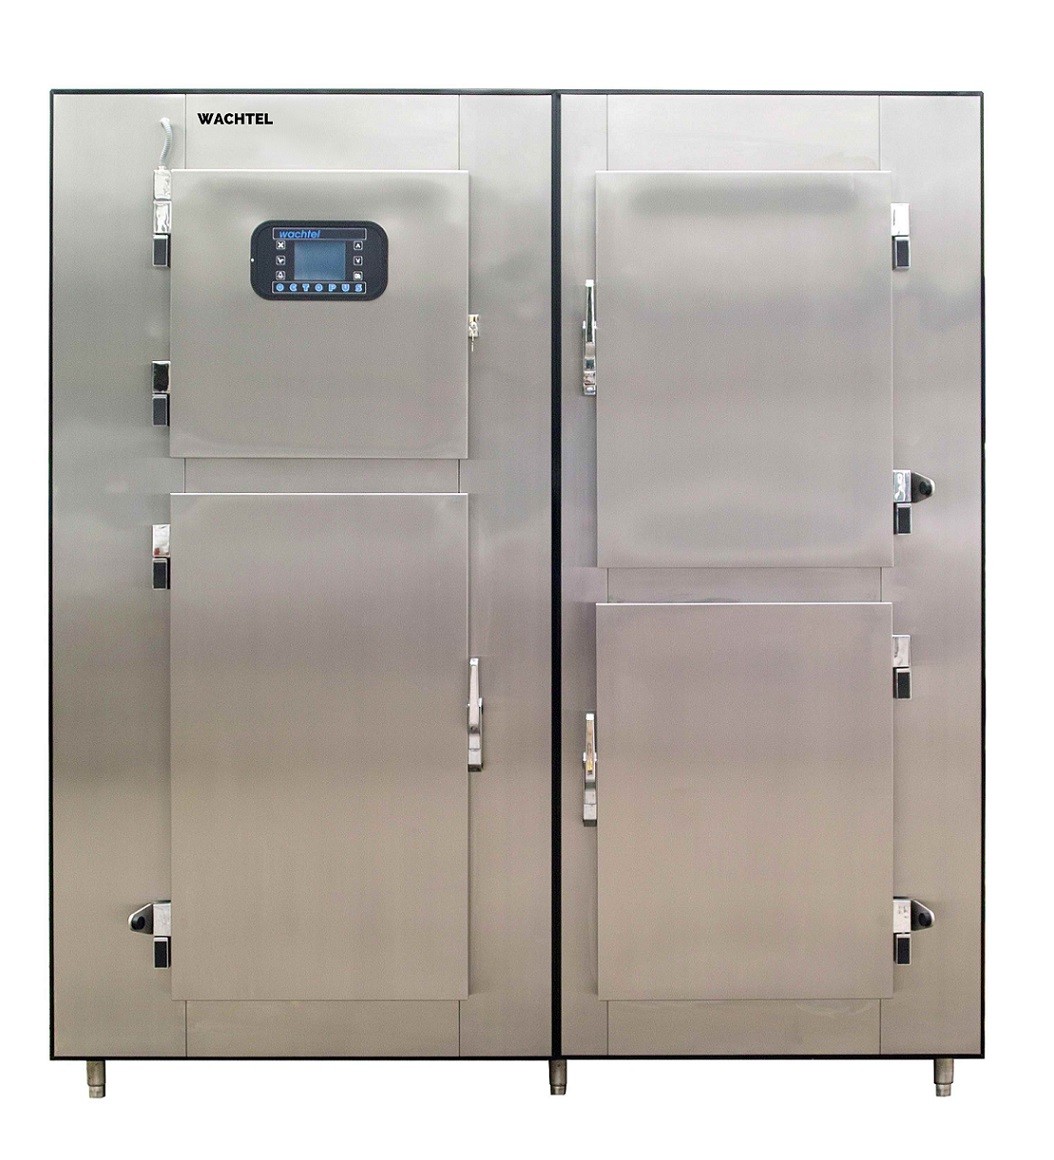 Refrigeration equipment Coserv E